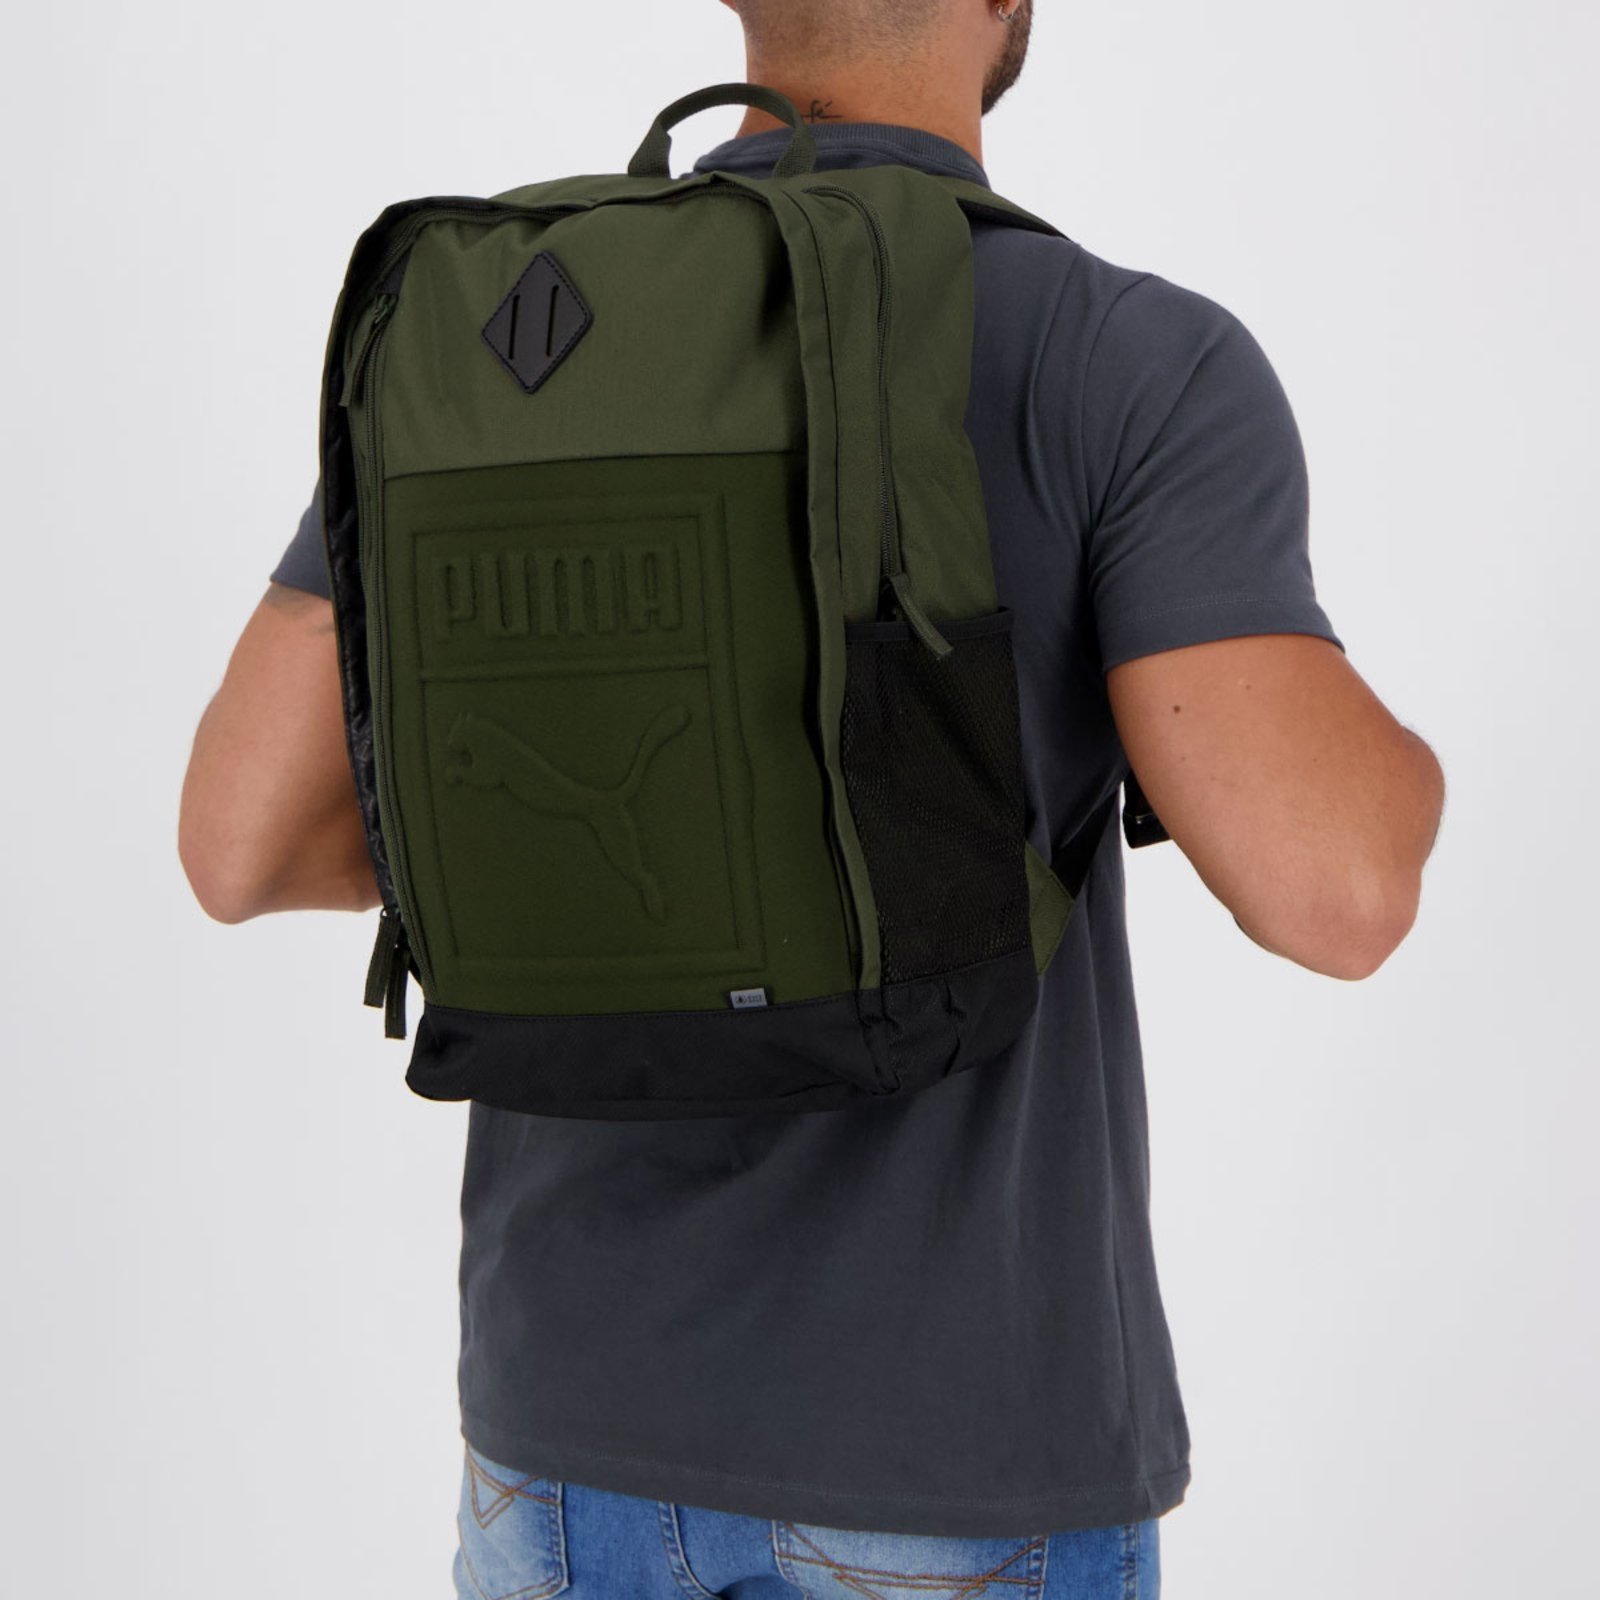 Mochila Puma S Backpack